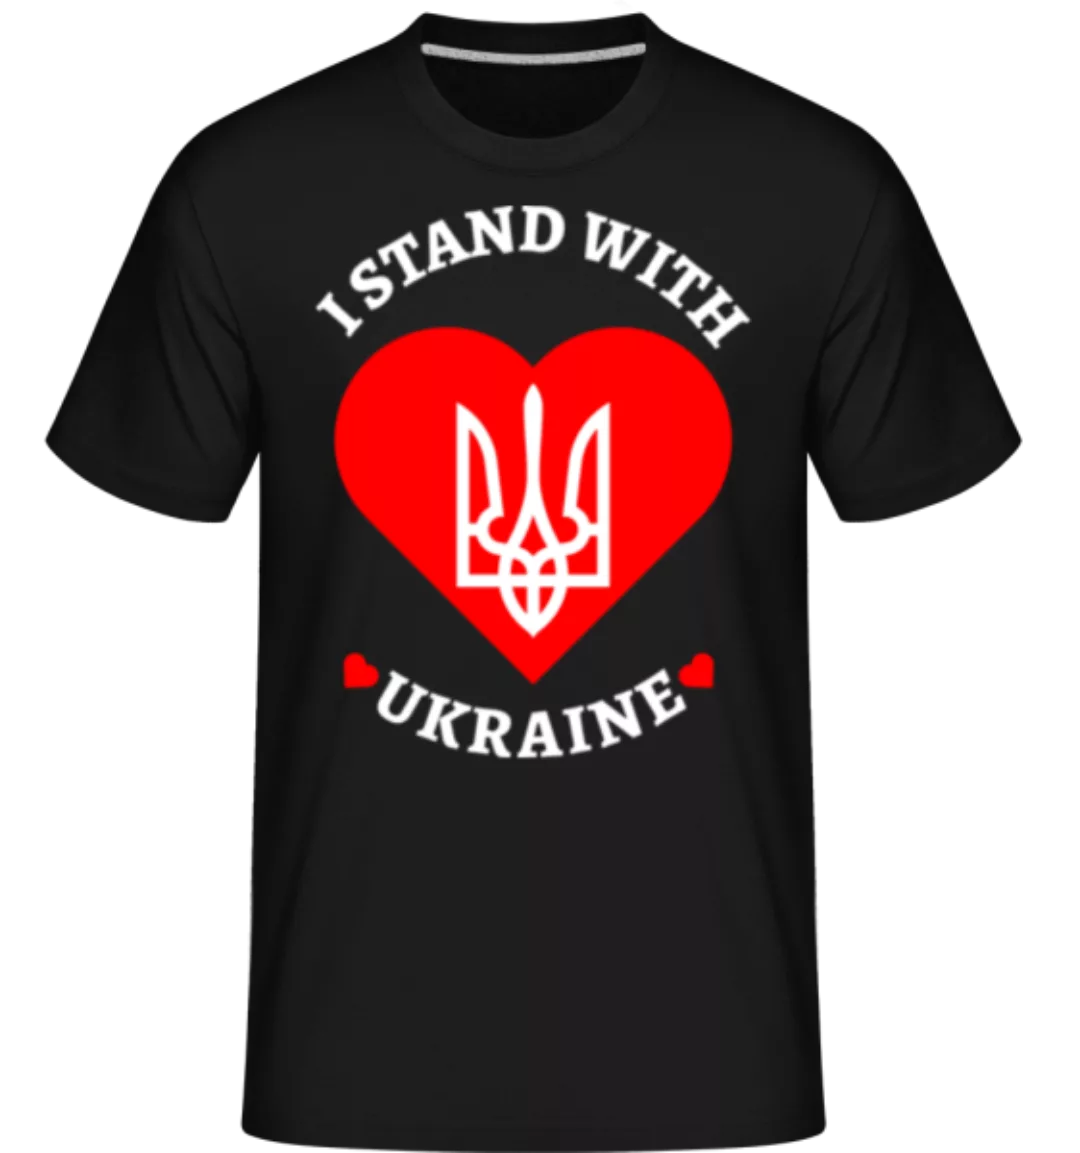 I Stand With Ukraine · Shirtinator Männer T-Shirt günstig online kaufen